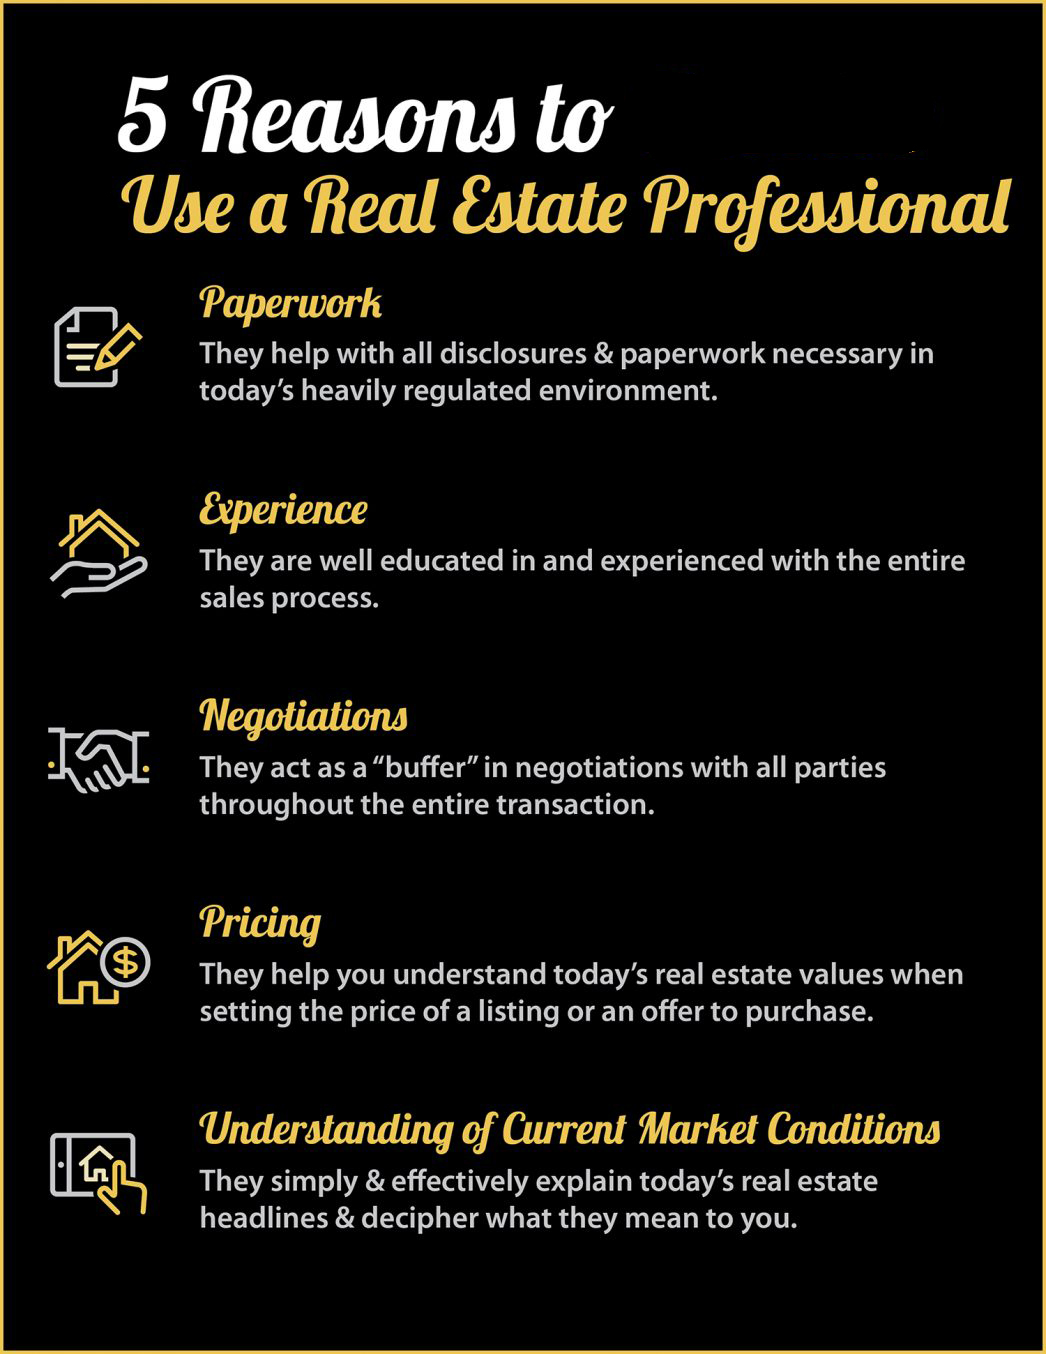 Redding Real Estate Professionals